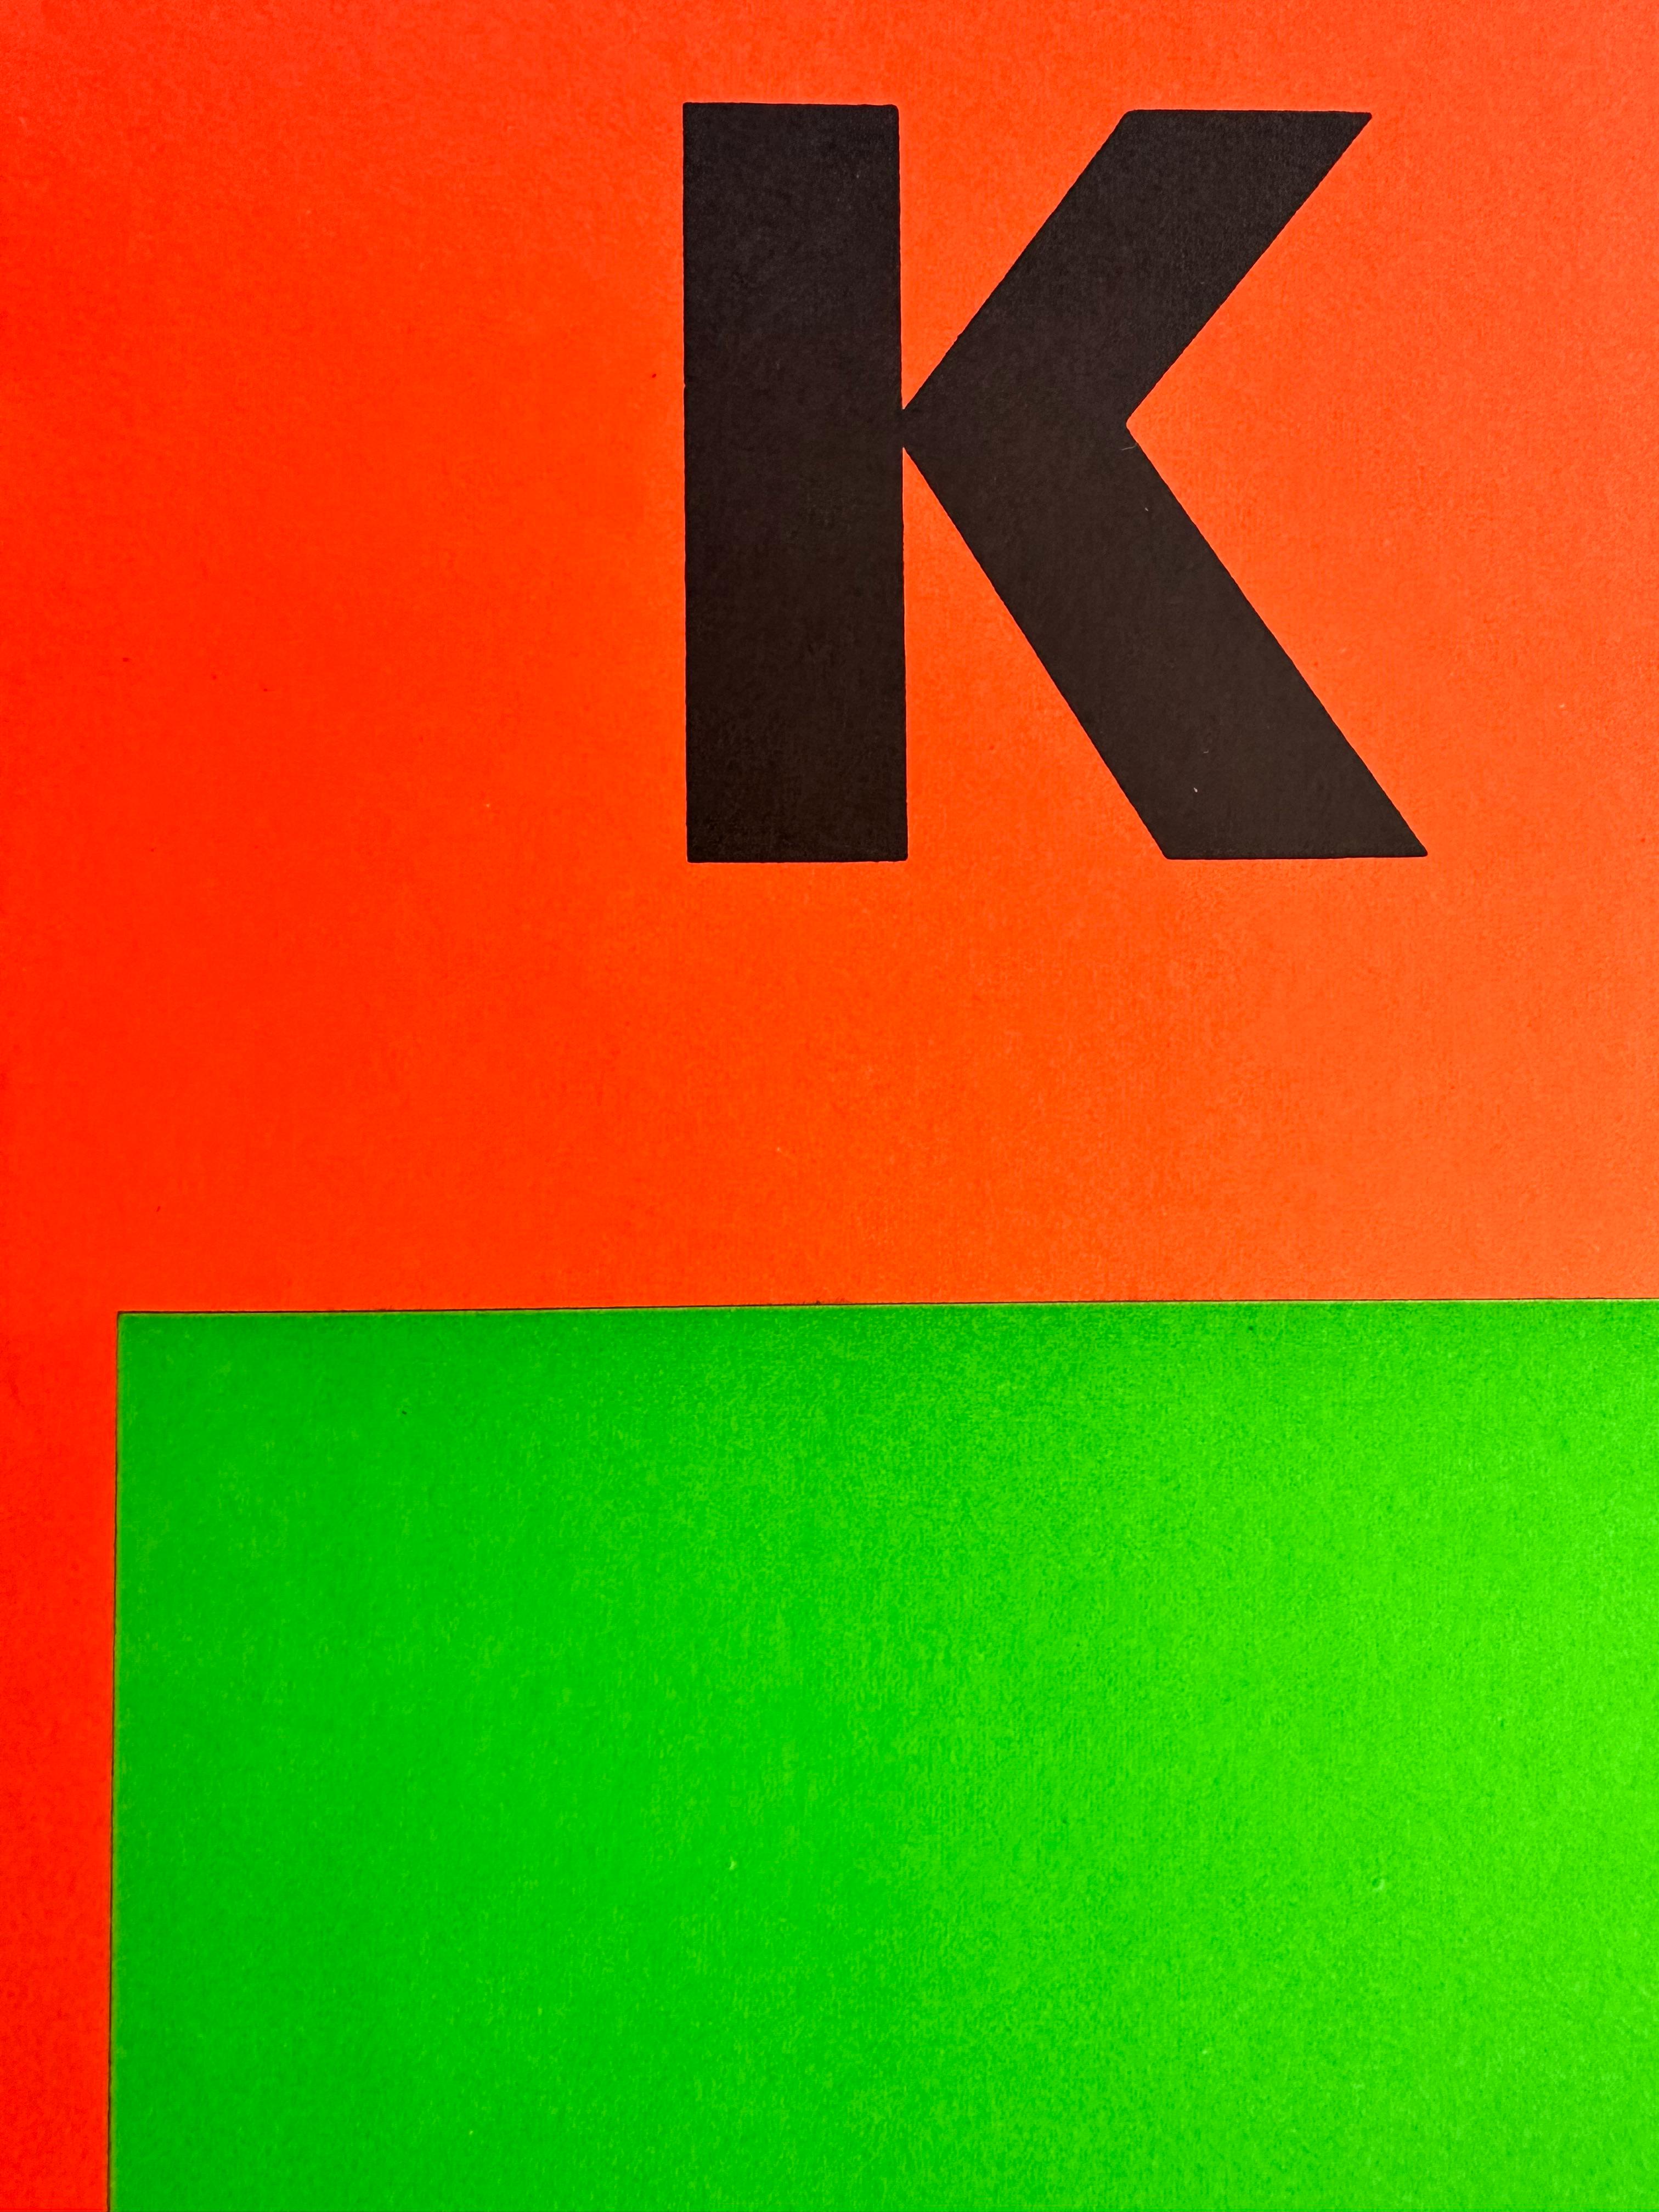 Affiche originale de l'exposition Ellsworth Kelly, 1964. Gallerie Maeght. 26 x 20 inches. Lithographie sur papier. 

Léger froissement en bas à gauche. Quelques traces d'usure sur le bord du papier, en haut à gauche. Très propre, pas de taches ni de